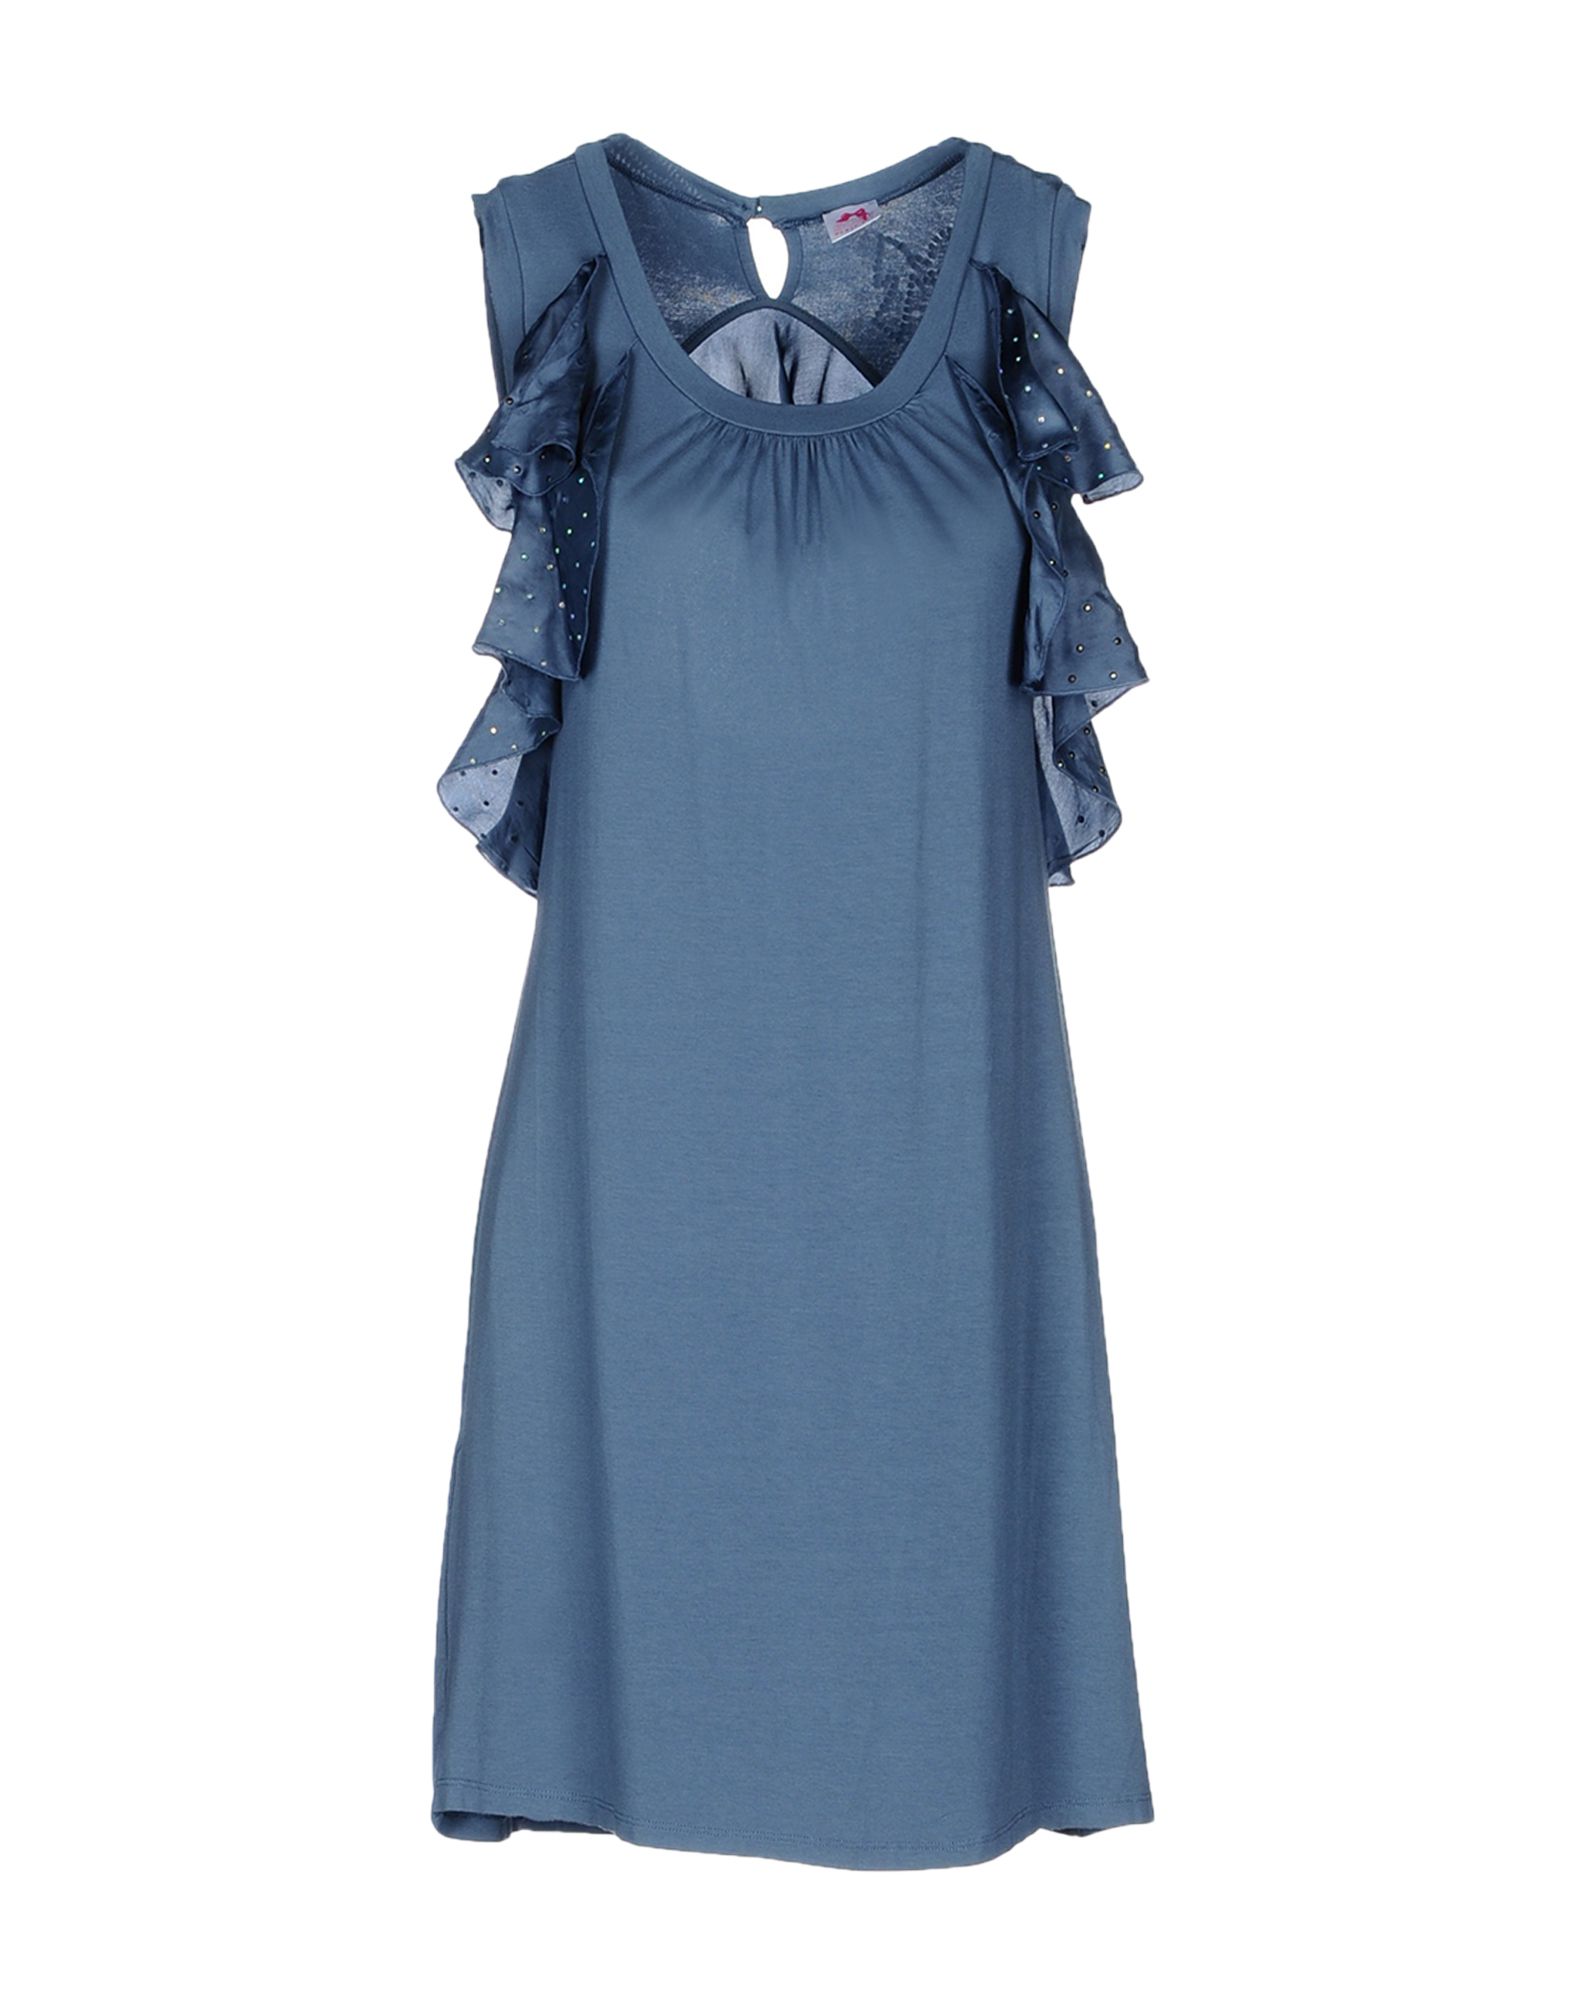 Scee By Twin-set Short Dress in Blue (Slate blue) | Lyst